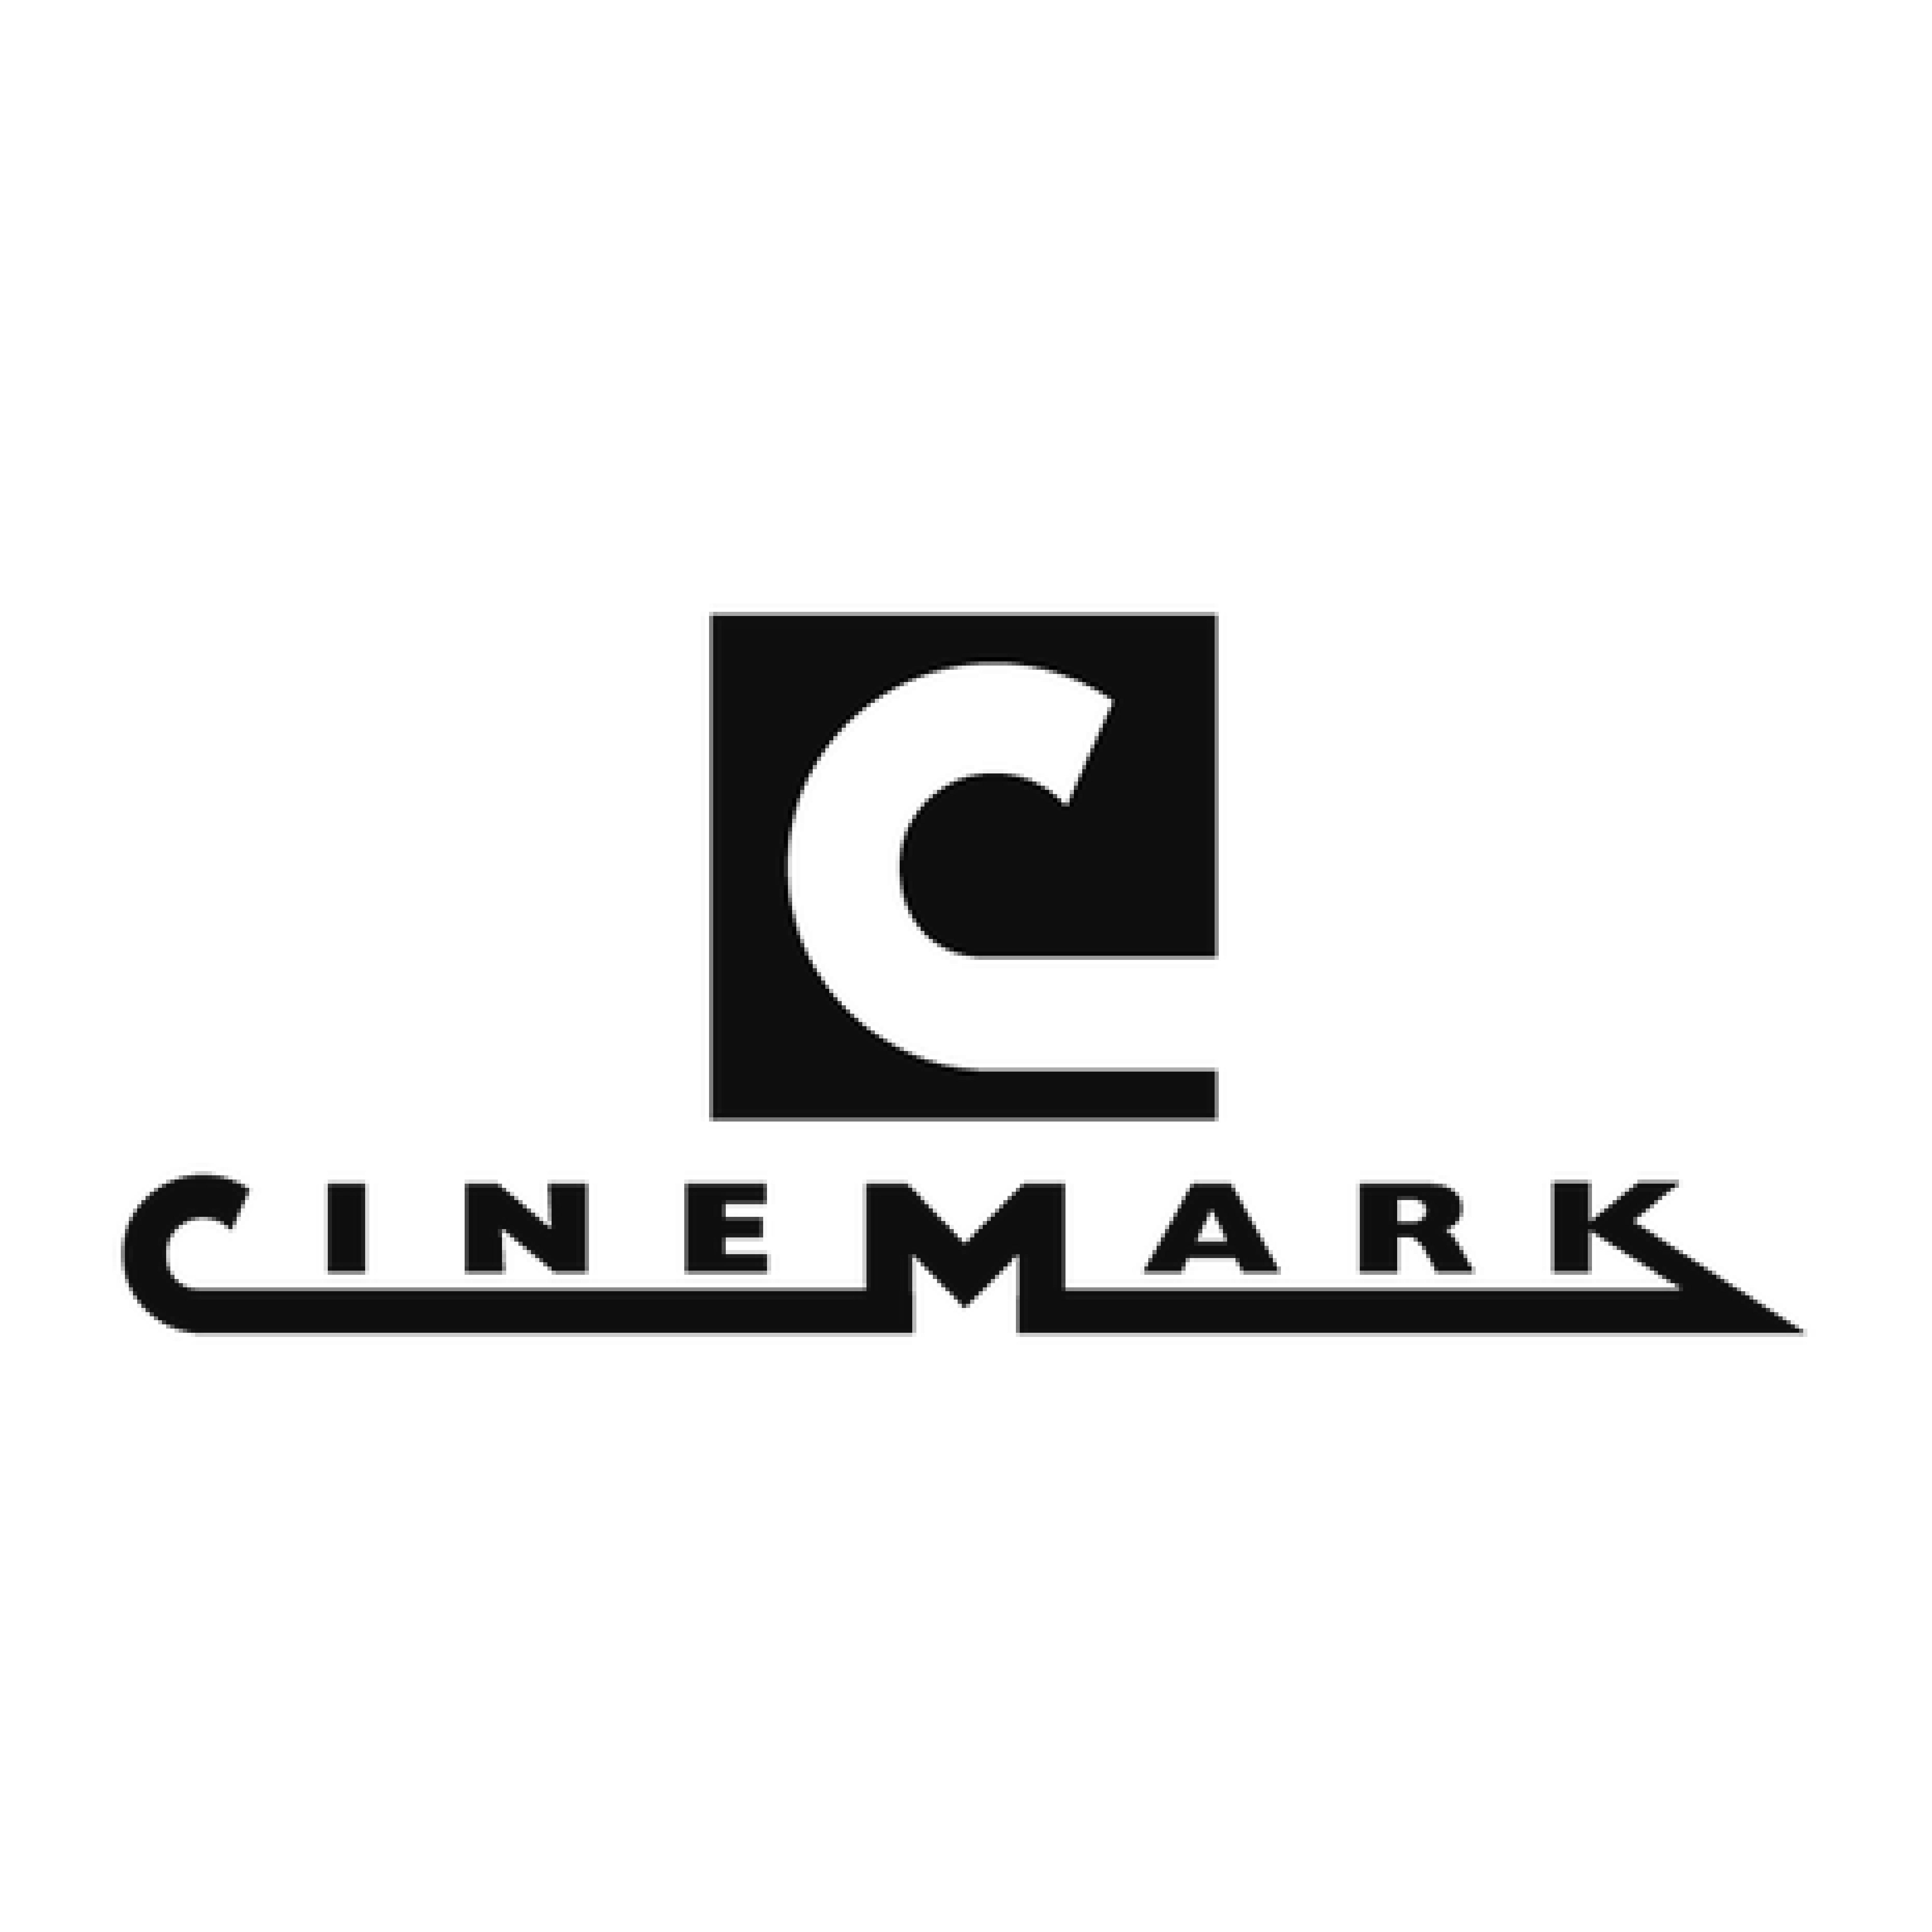 Cinemark Logo - Cinemark logo-03 - Perkins Rowe